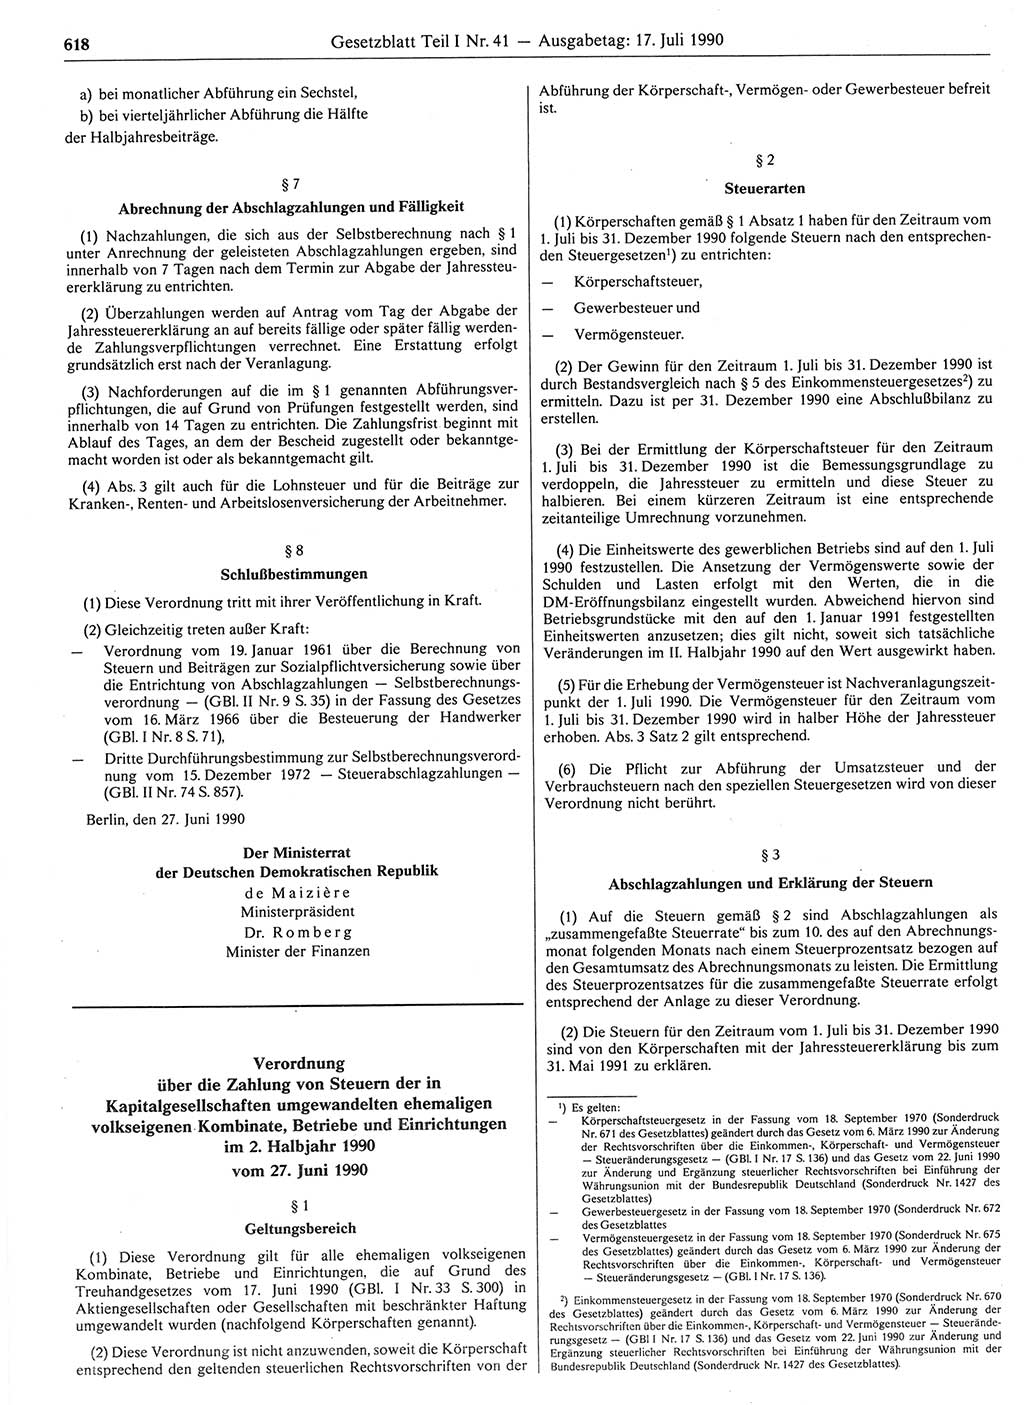 Gesetzblatt (GBl.) der Deutschen Demokratischen Republik (DDR) Teil Ⅰ 1990, Seite 618 (GBl. DDR Ⅰ 1990, S. 618)